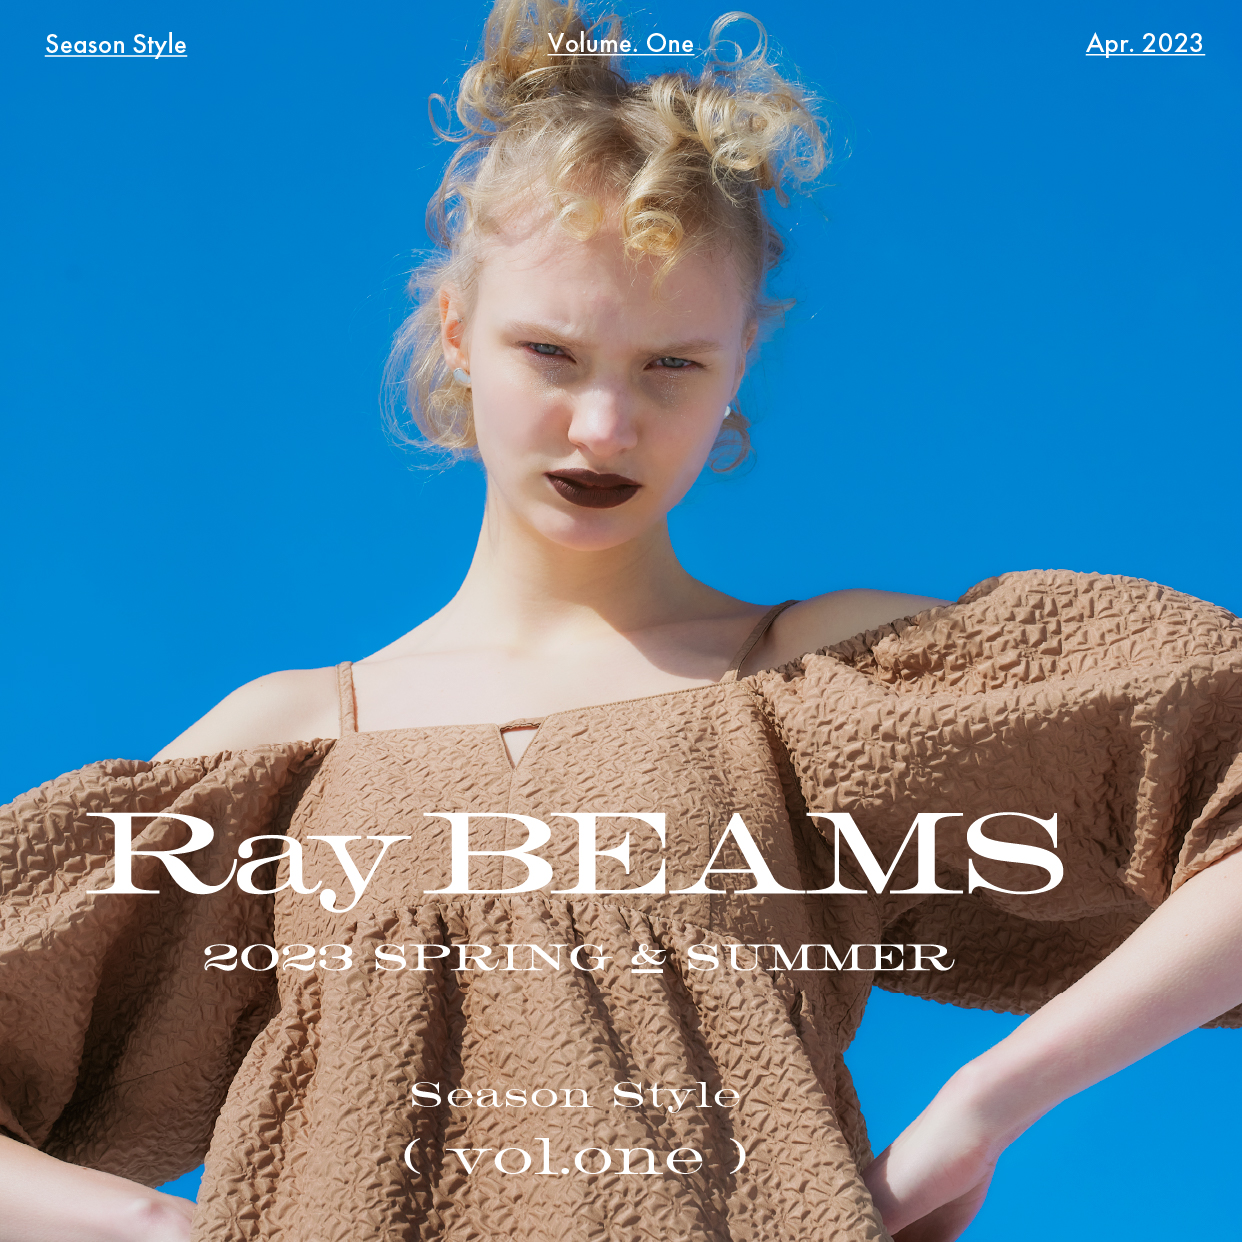 盡情穿出時下的時尚搭配吧｜Ray BEAMS 2023 Spring & Summer Season Style vol.1